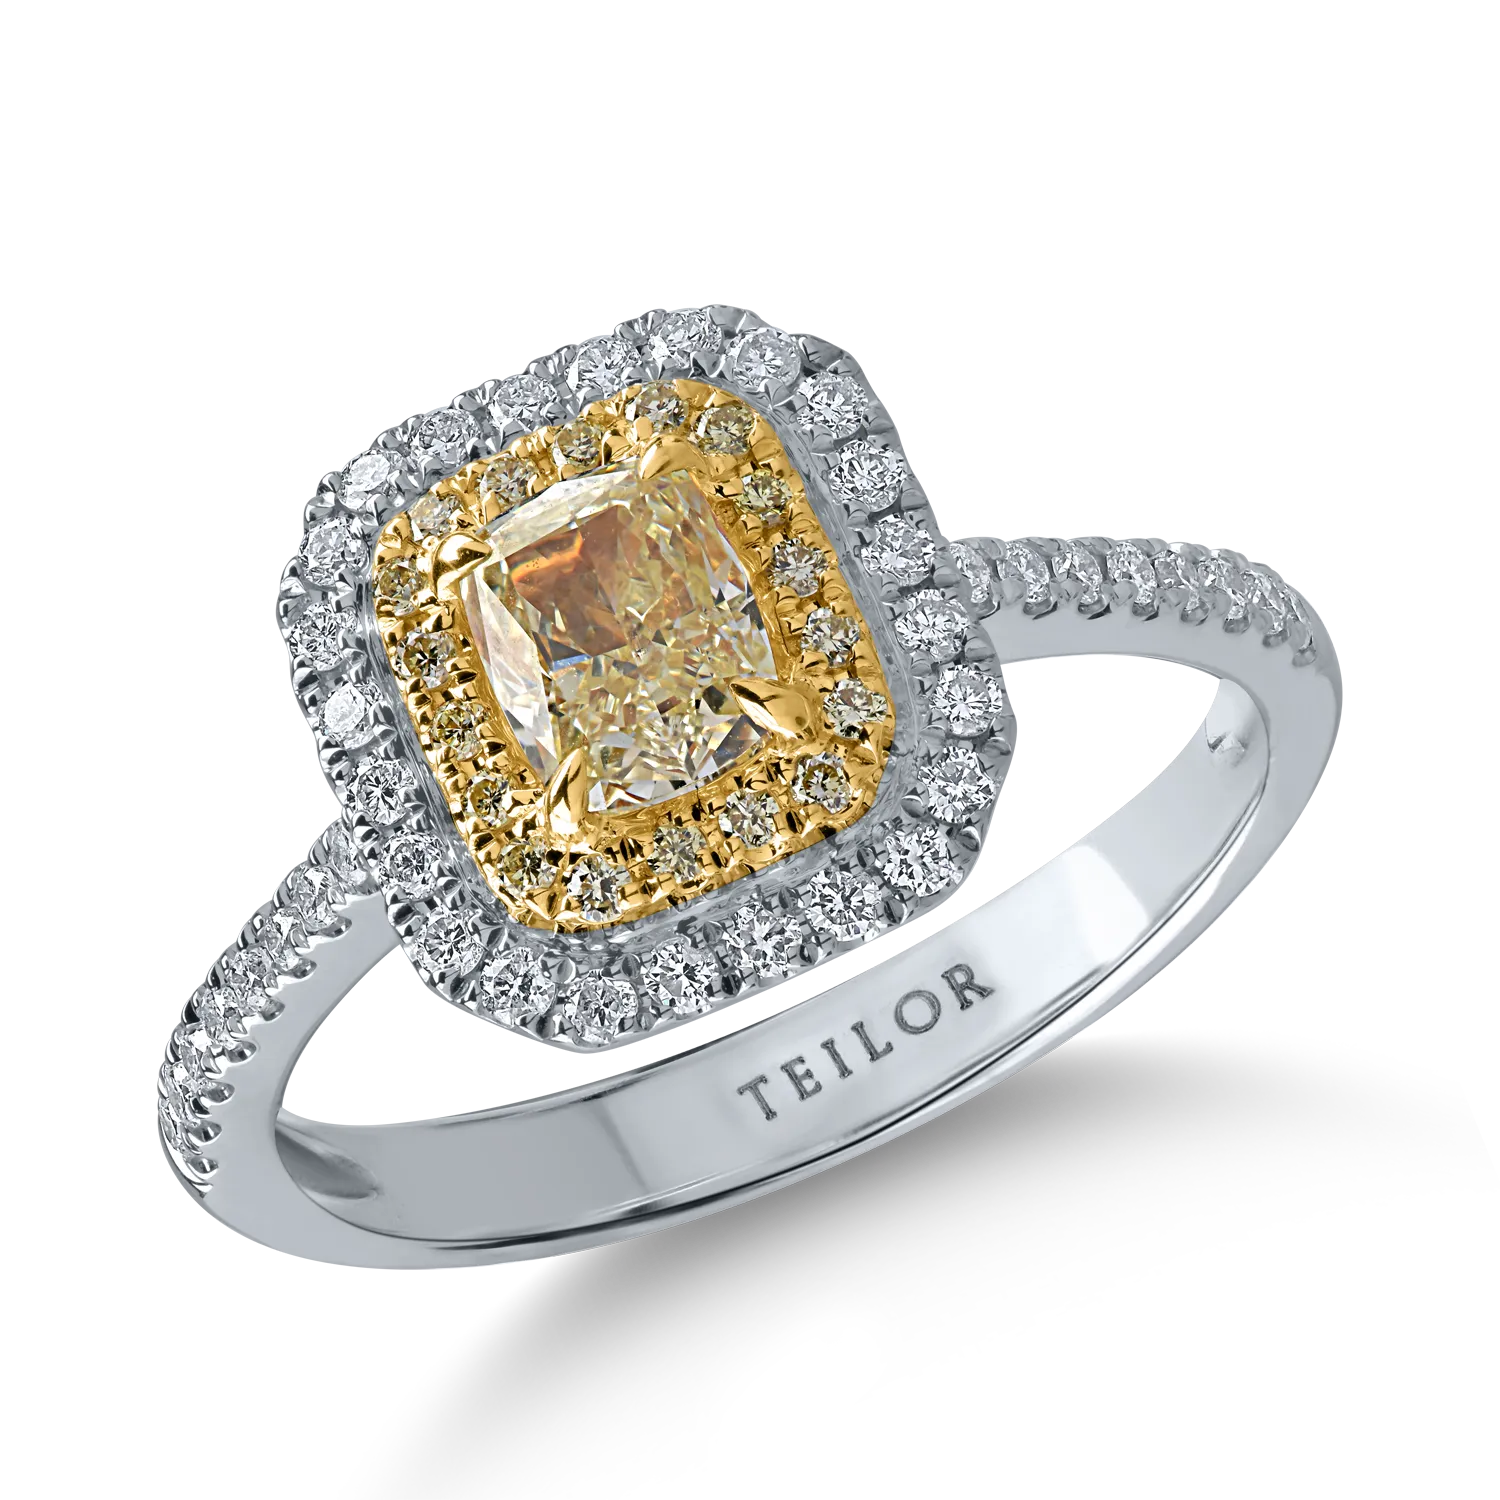 Sárga-fehér arany gyűrű 1.09ct gyémántokkal